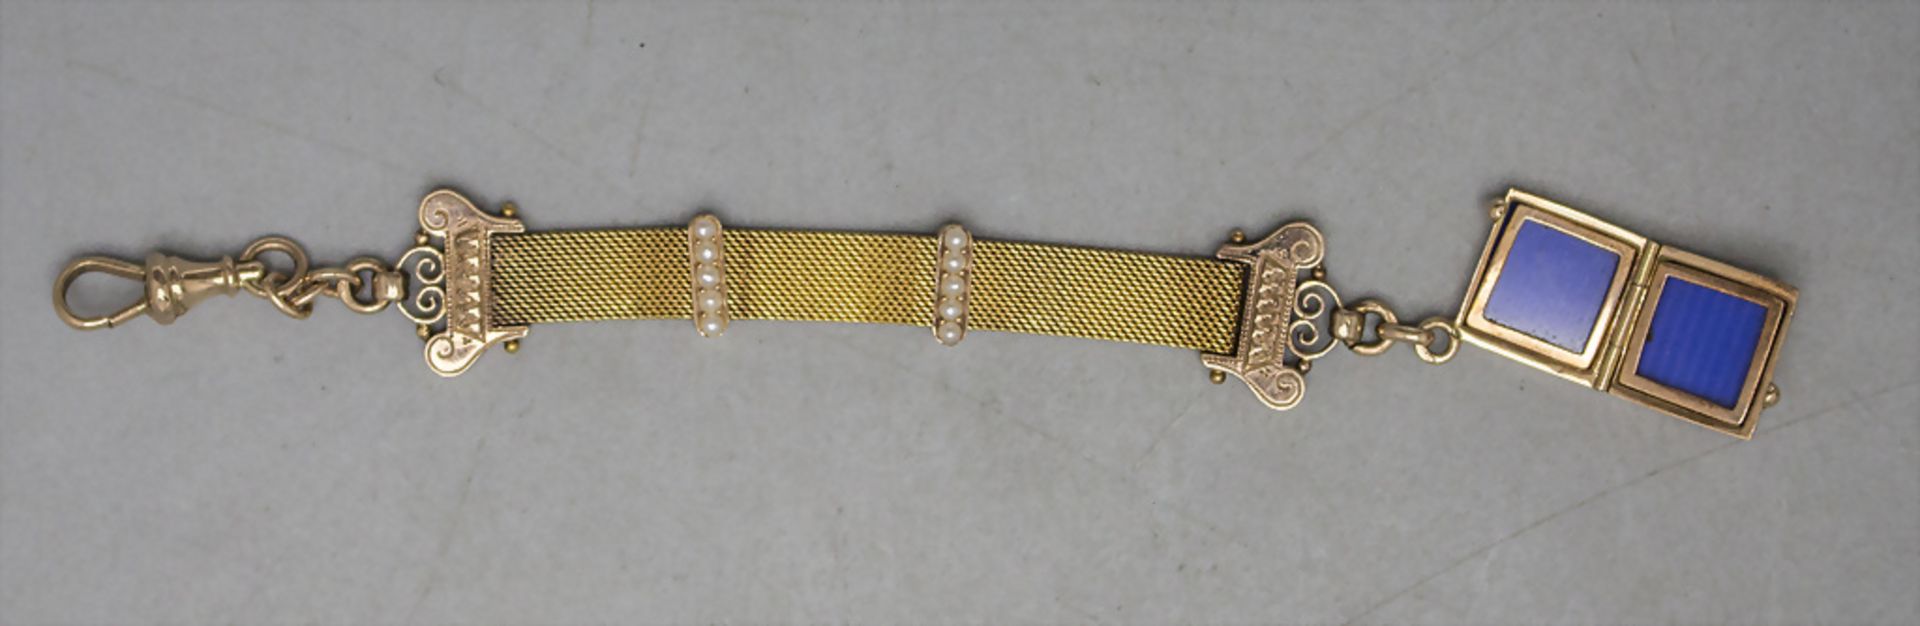 Chatelaine / Uhrenkette in Gold / A 14 ct gold watch chain, 19. Jh. - Bild 6 aus 6